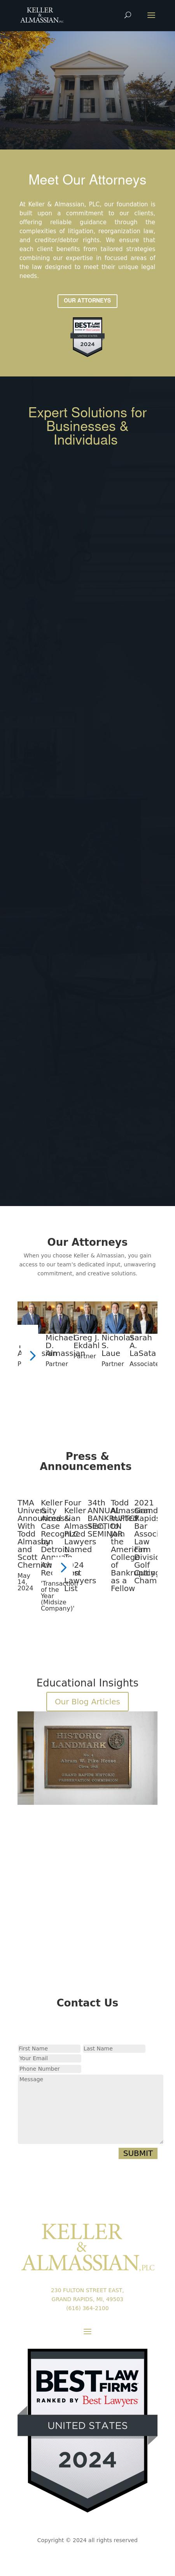 Keller & Almassian, PLC - Grand Rapids MI Lawyers